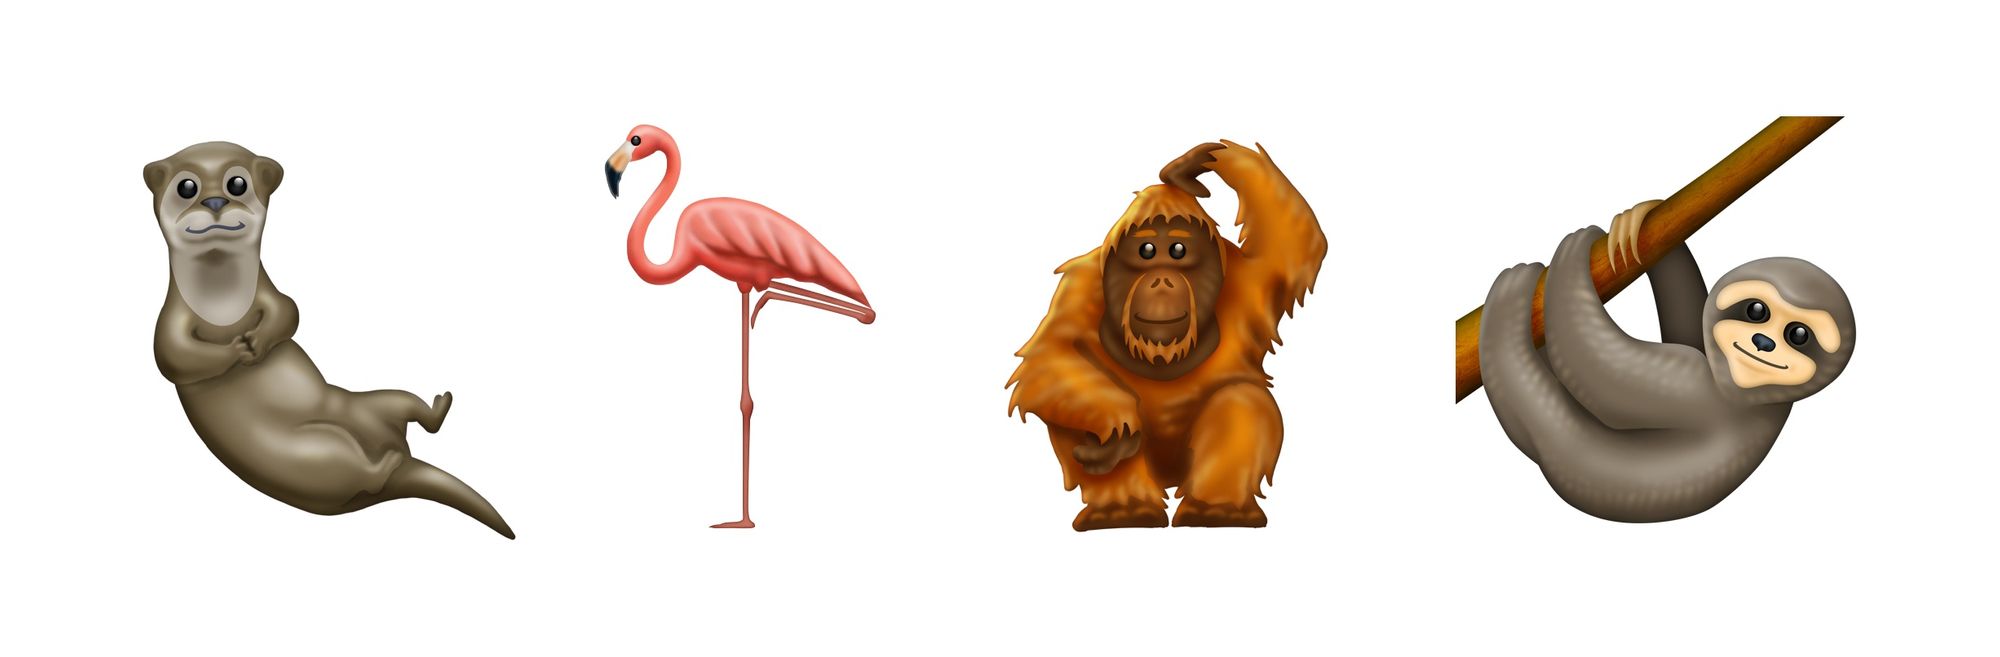 emojipedia-animals-emoji-12-0